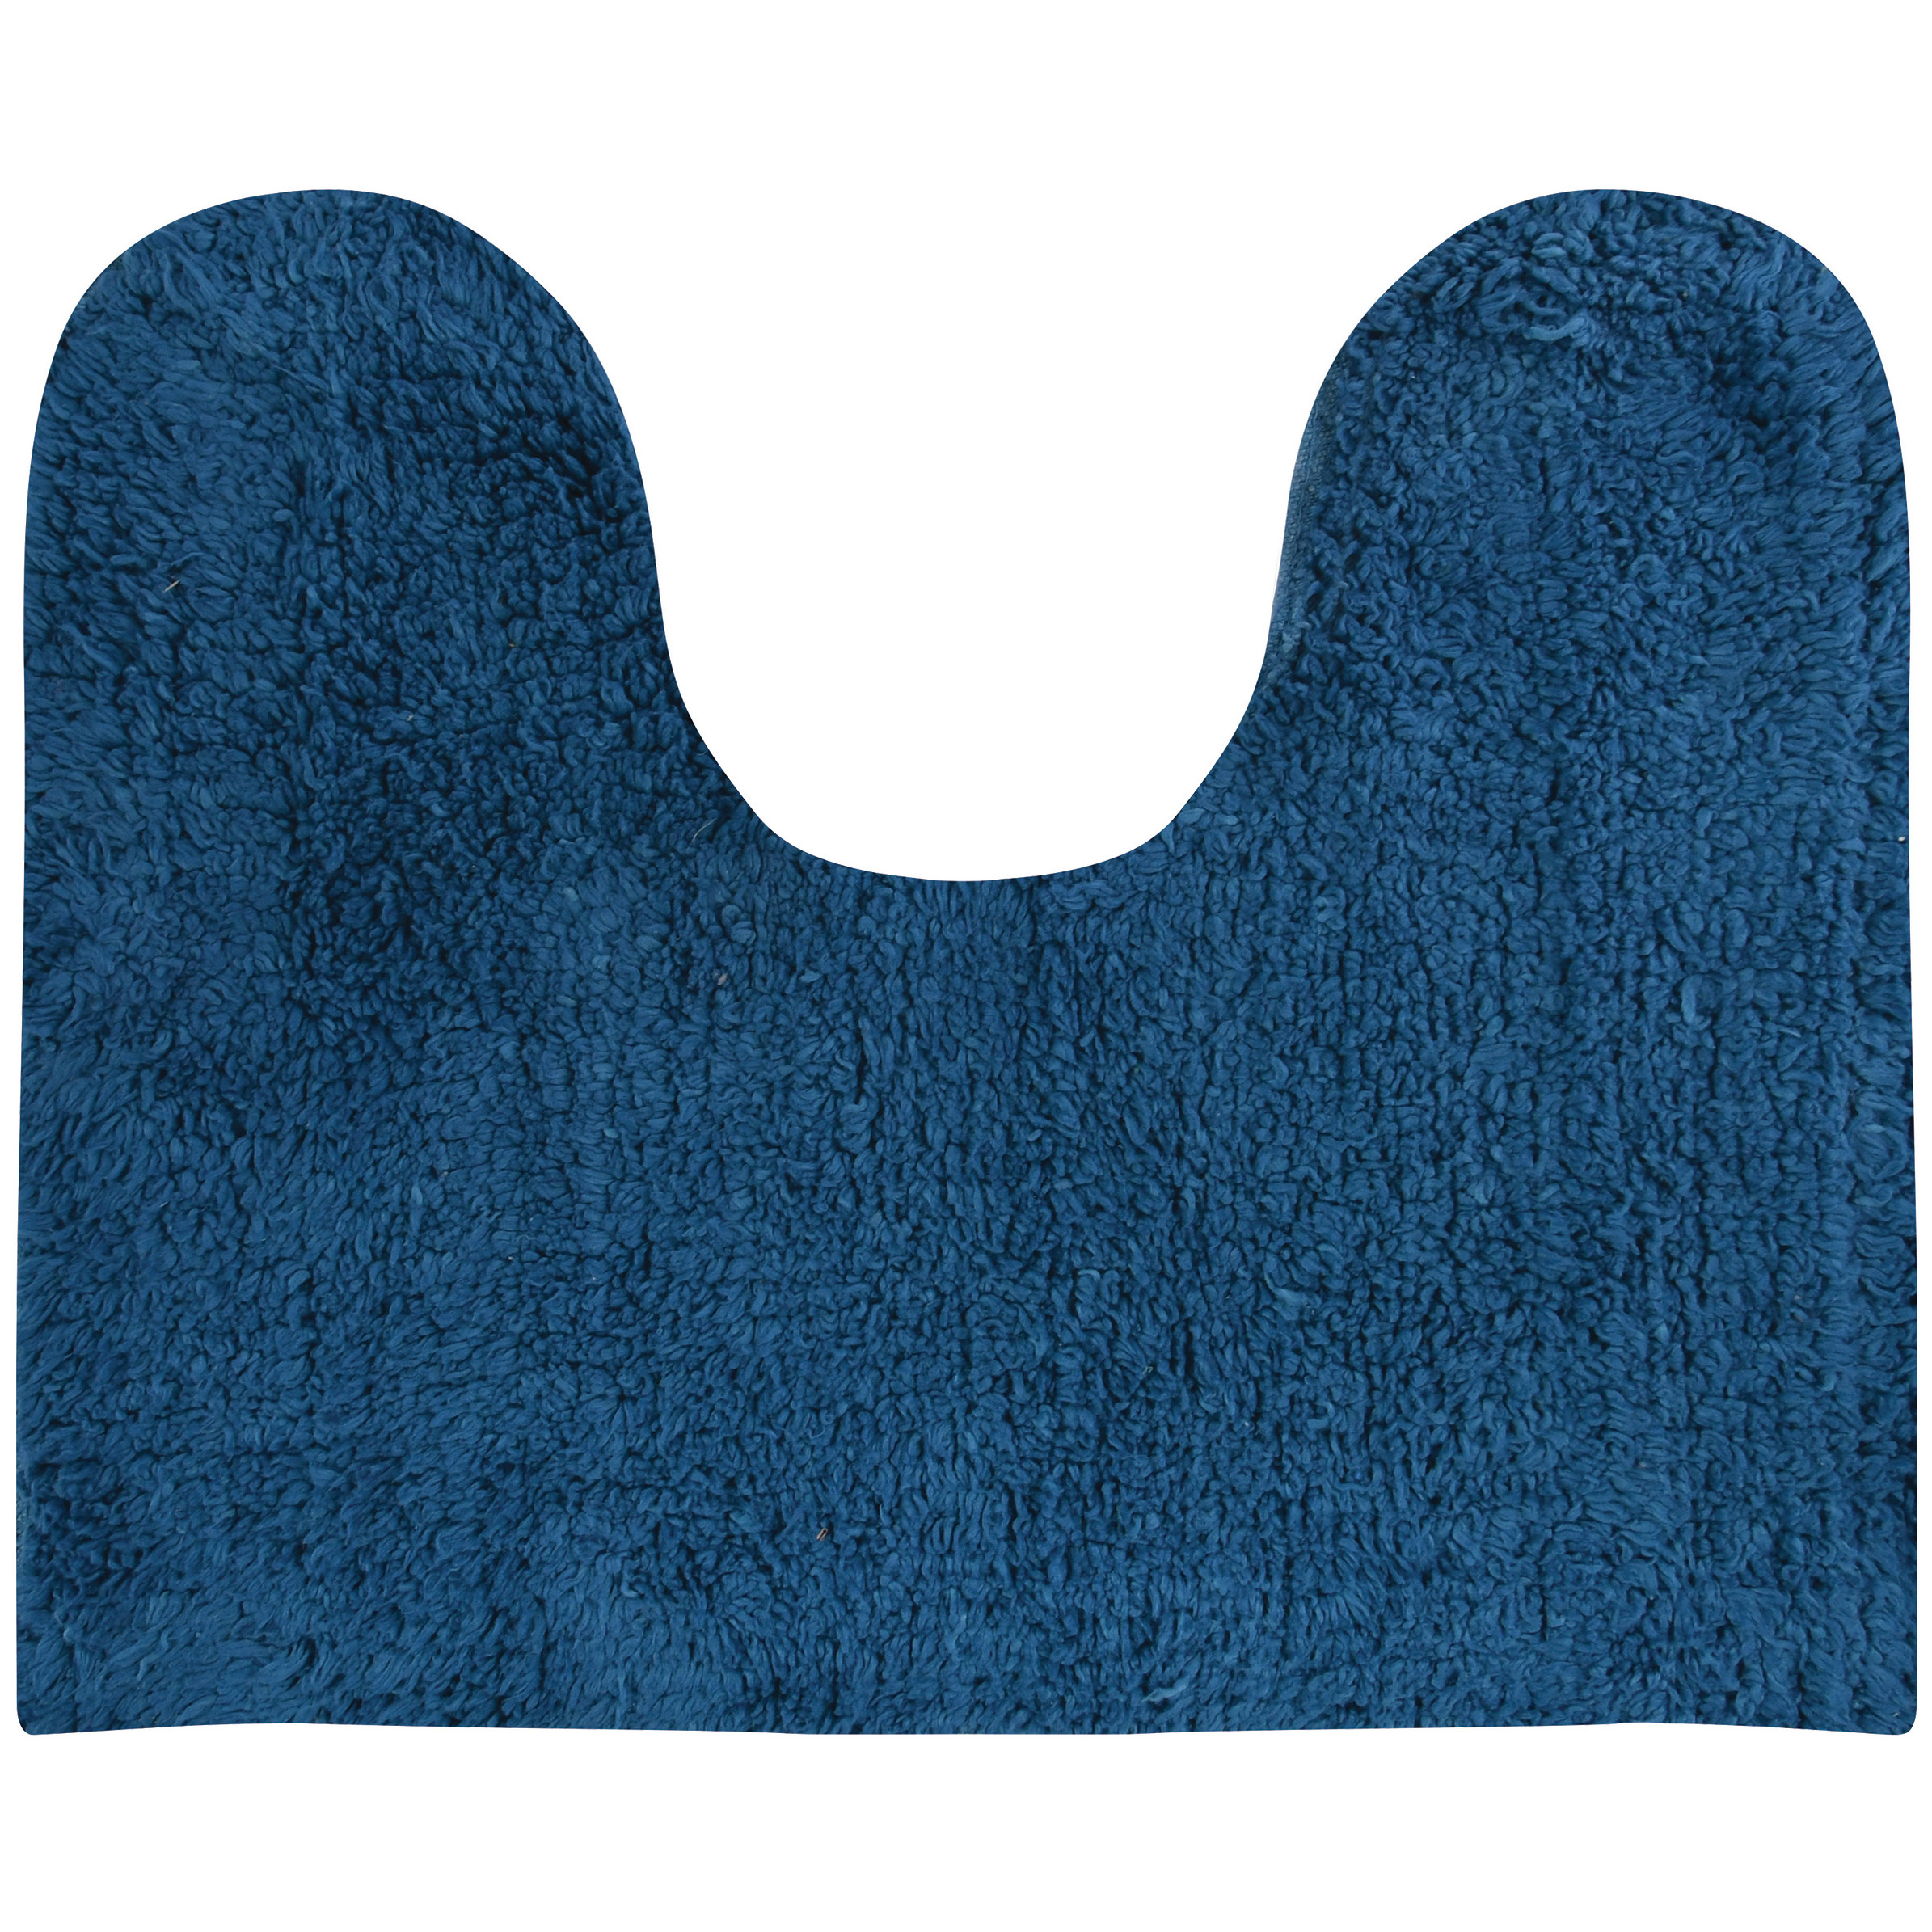 Badkamerkleedje-badmat voor op de vloer blauw 45 x 35 cm